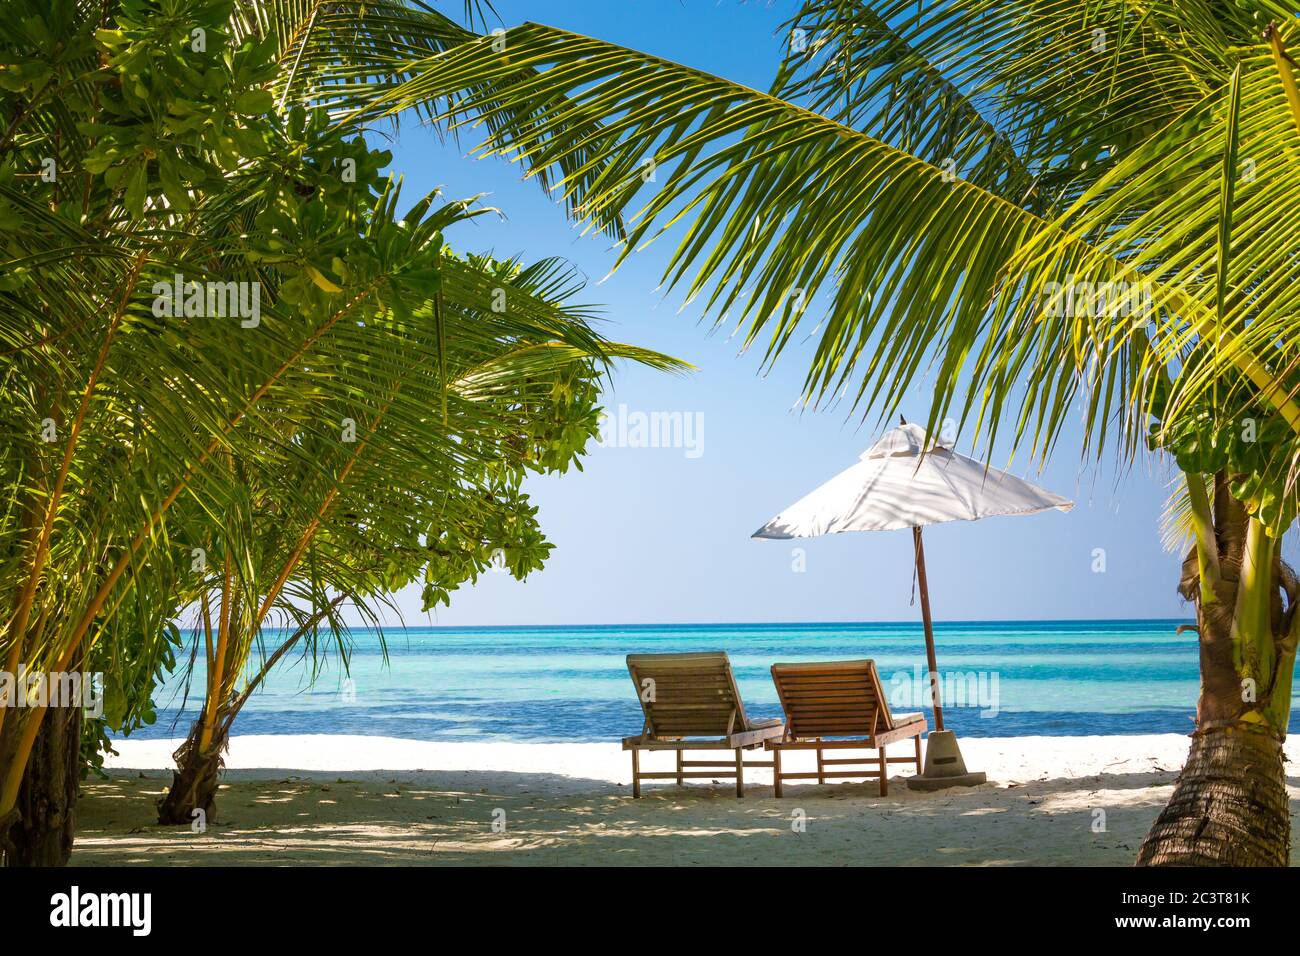 Ruhige Landschaft, erholsamer Strand, tropisches Landschaftsdesign. Sommerurlaub Reise Urlaub Design. Luxusurlaub, Liegen unter Sonnenschirm und Palmen Stockfoto